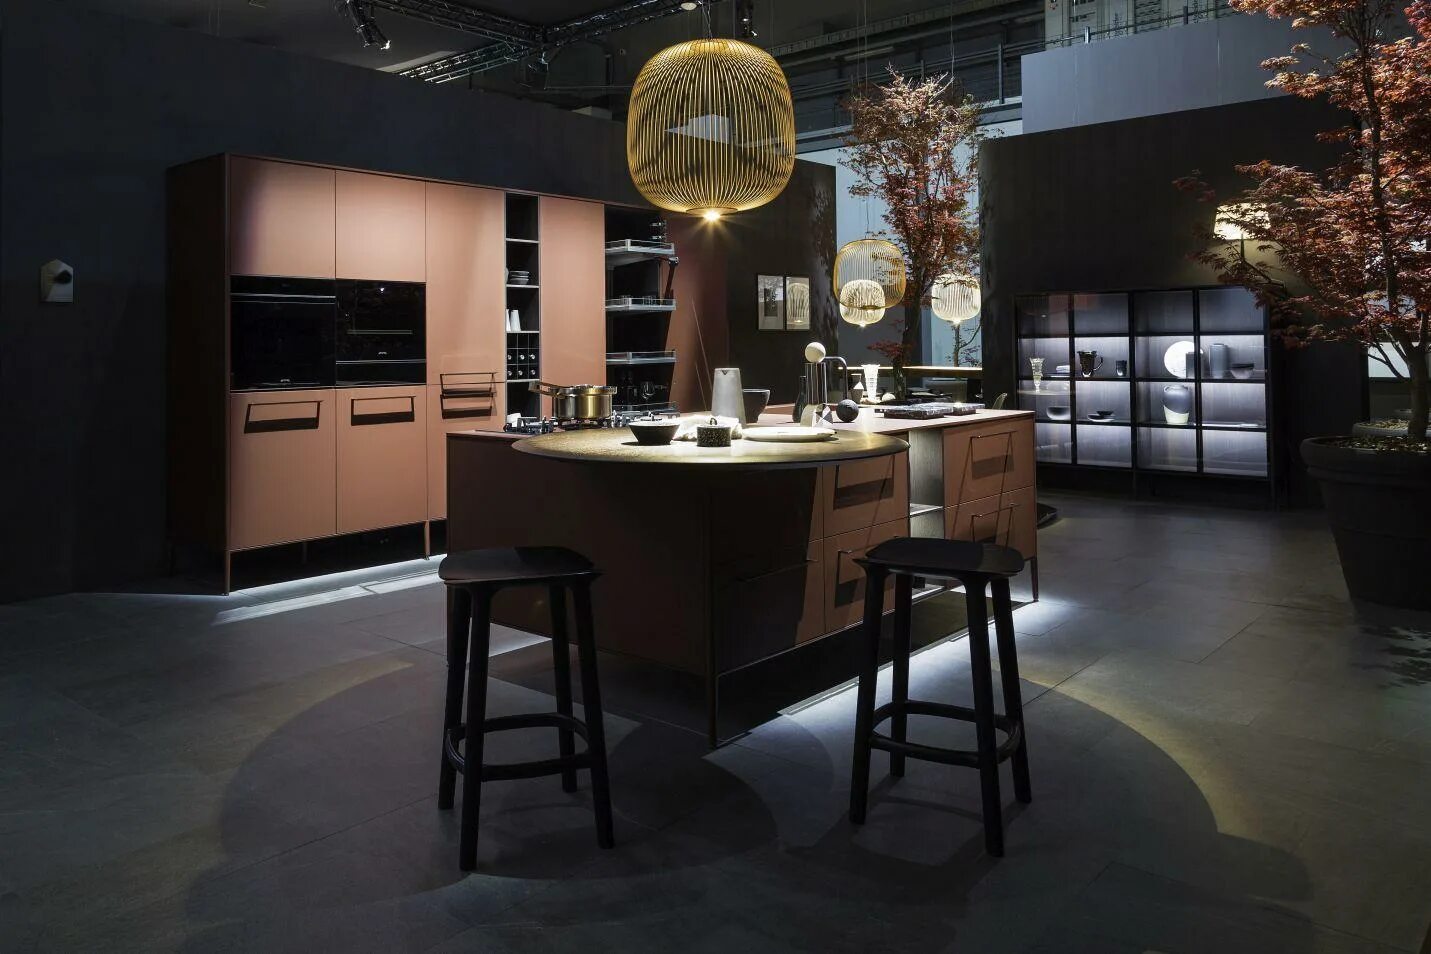 1 dine. Cesar кухни Unit. EUROCUCINA 2018. Мебельная выставка кухни в Милане 2021.